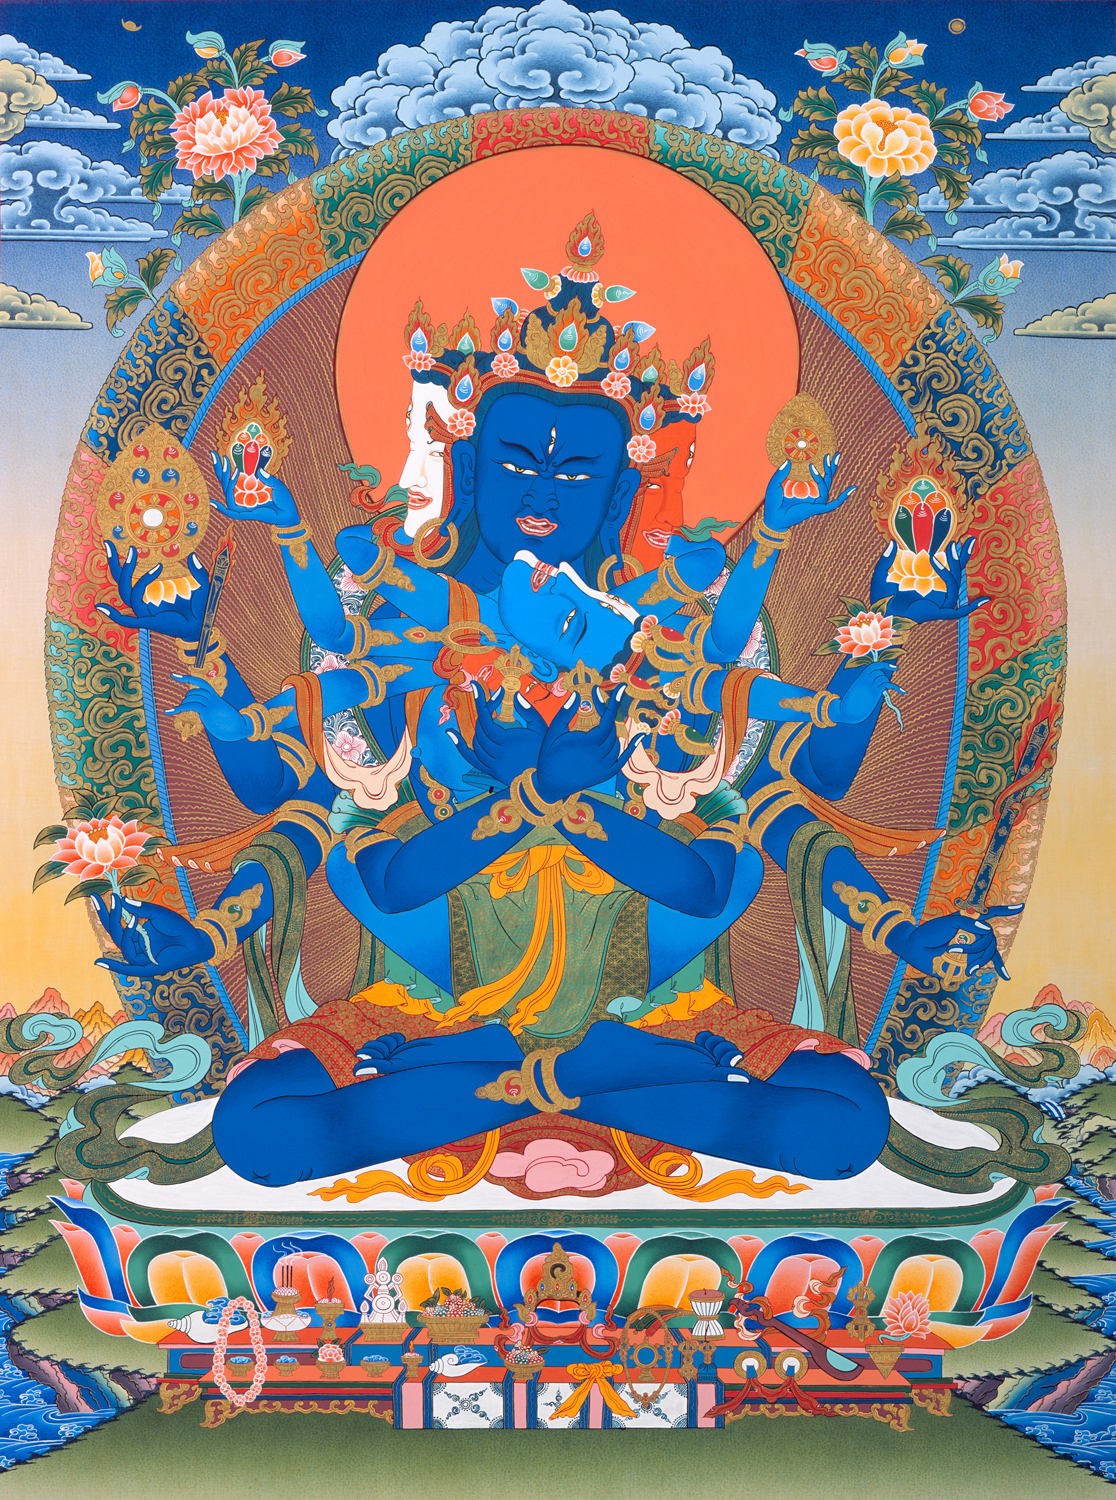 buddhas bodhisattvas resources guhyasamaja buddhism tantra tsemtulku lamp buddhist esoteric mamaki community consort refuge field profile a lu t